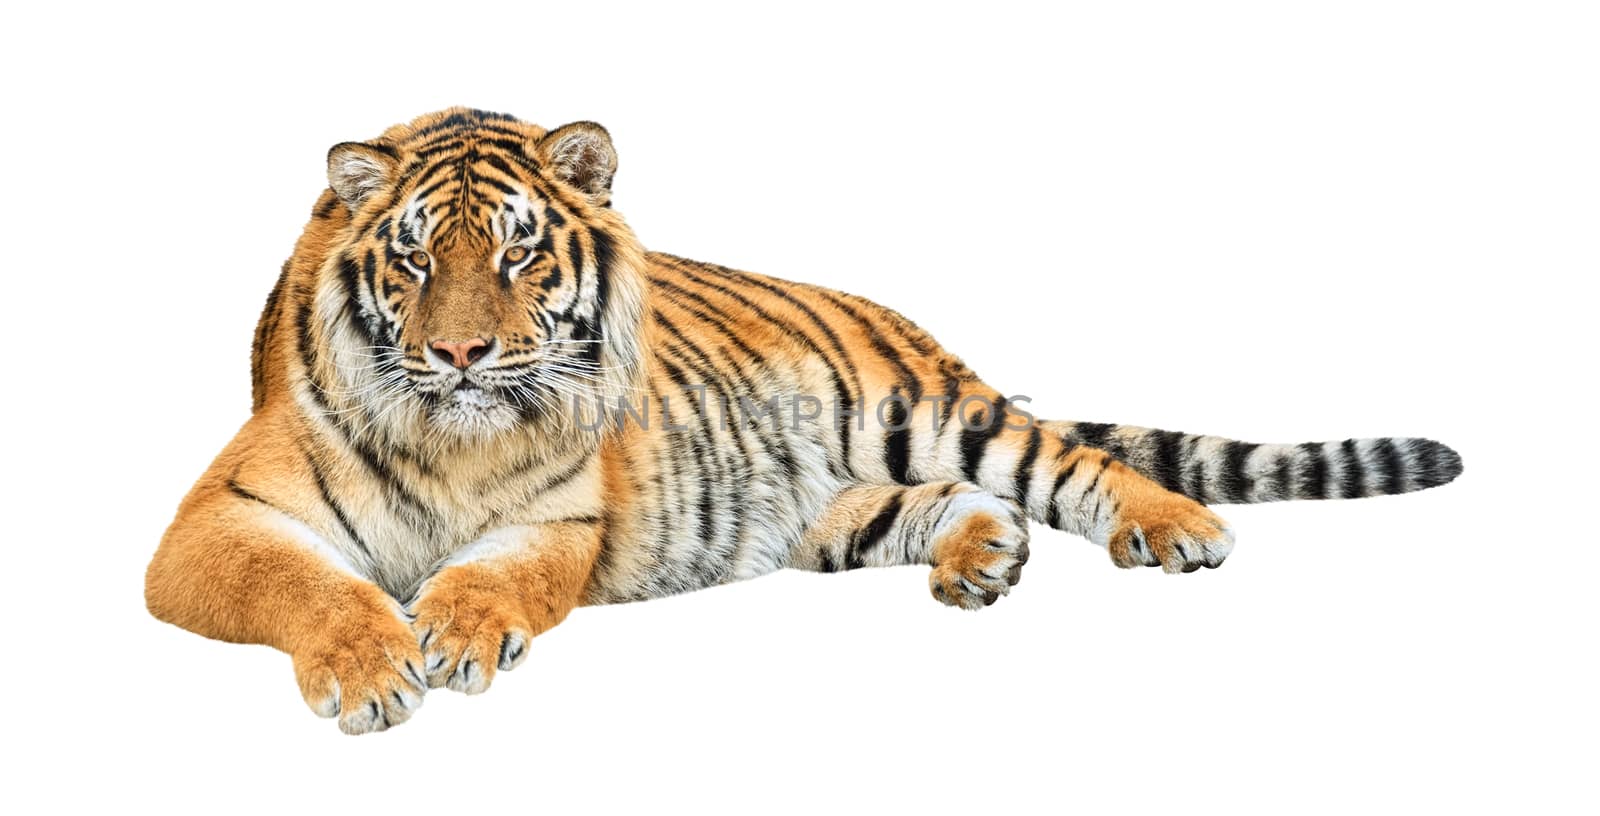 Siberian tiger (Panthera tigris altaica) cutout by vkstudio